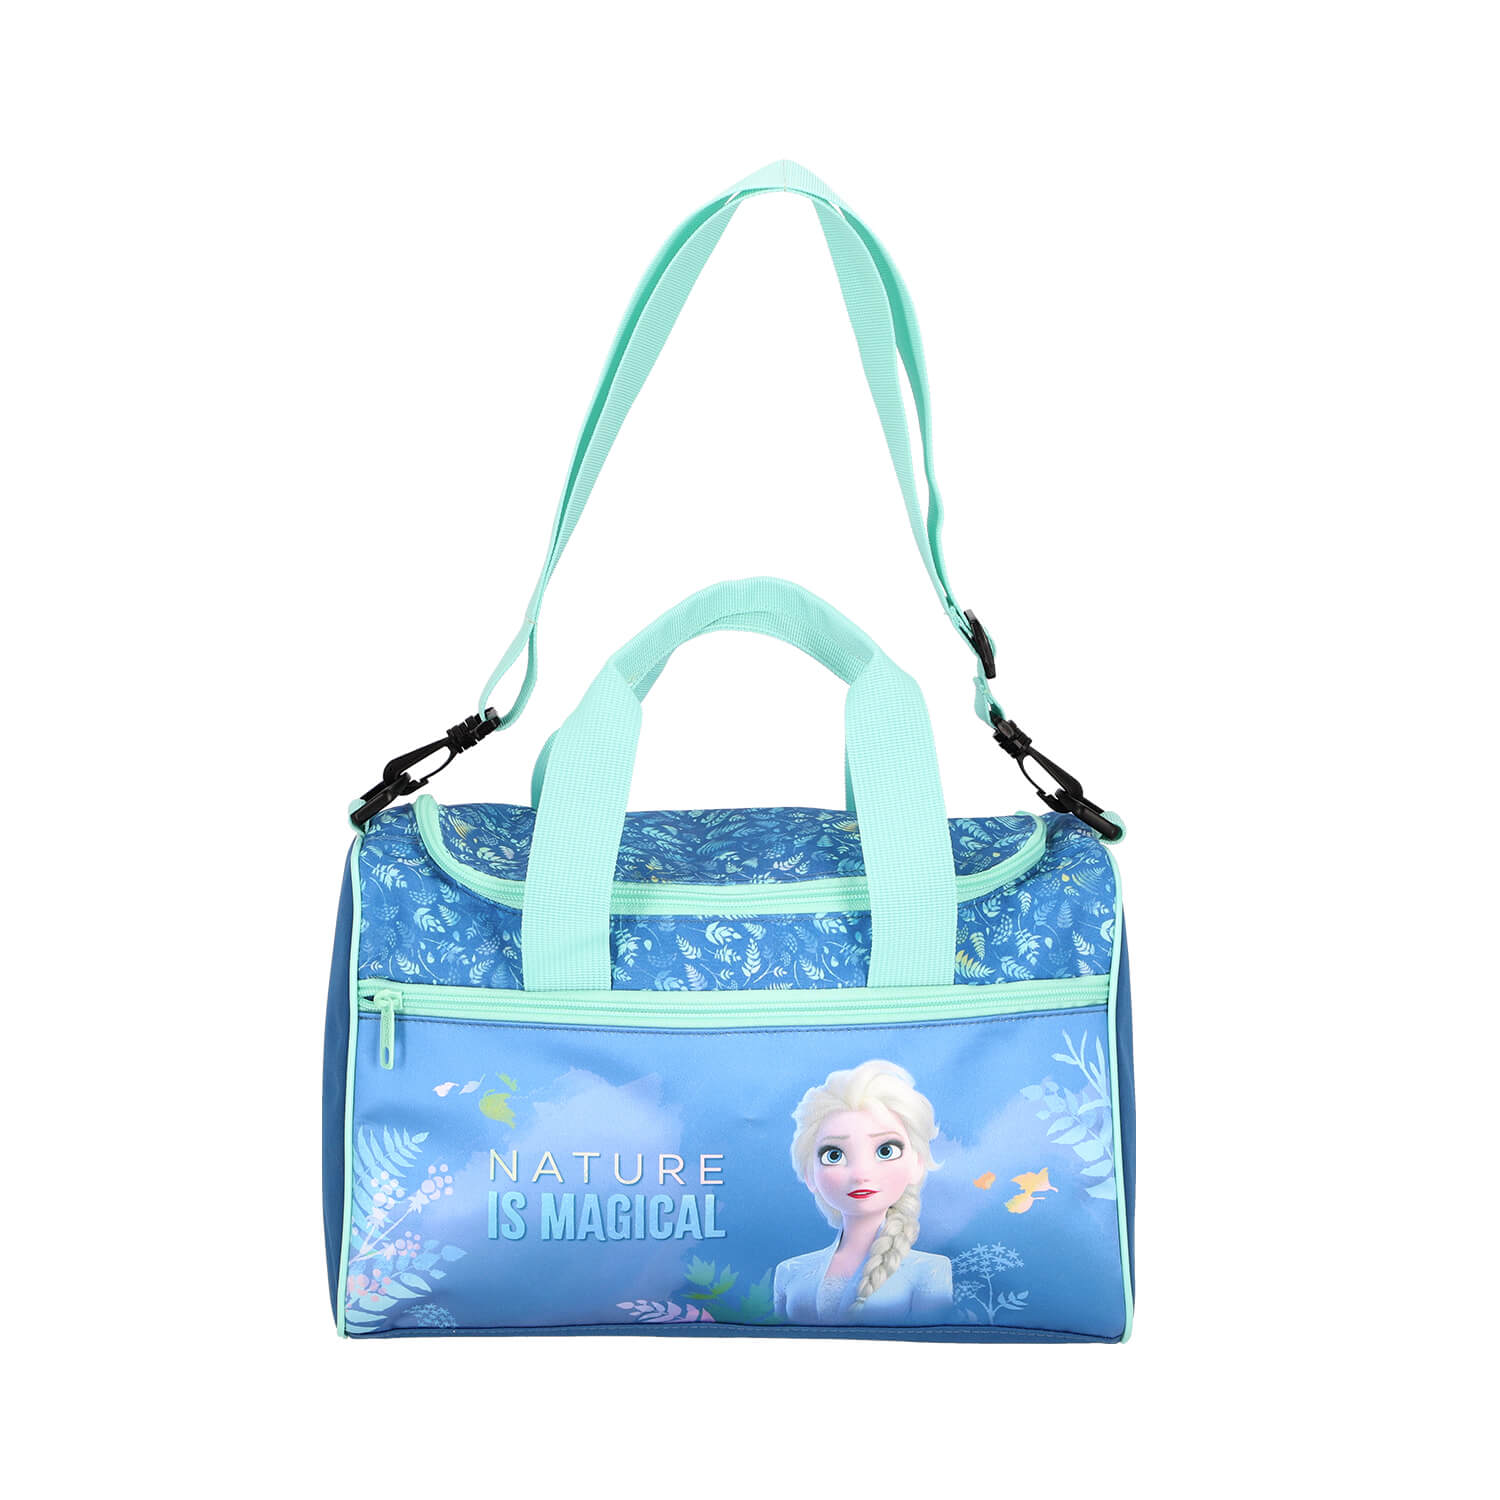 Scooli Sporttasche mit Frozen 2 Motiv in blau